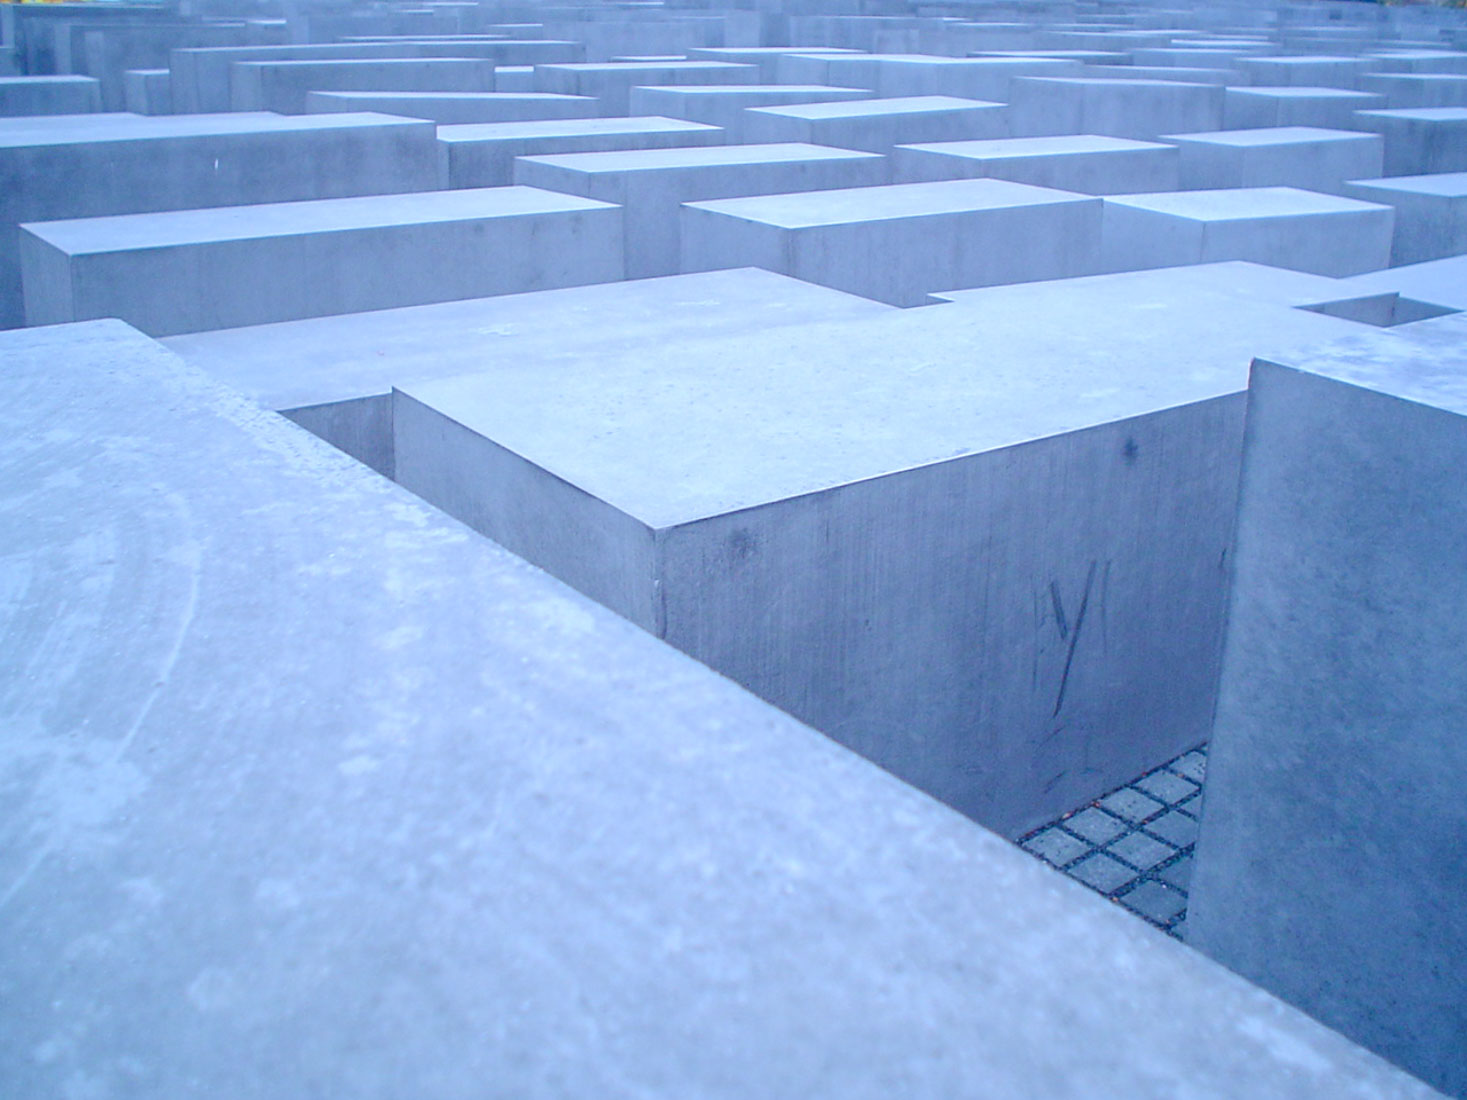 Peter Eisenman - Holocaust Memorial Berlin